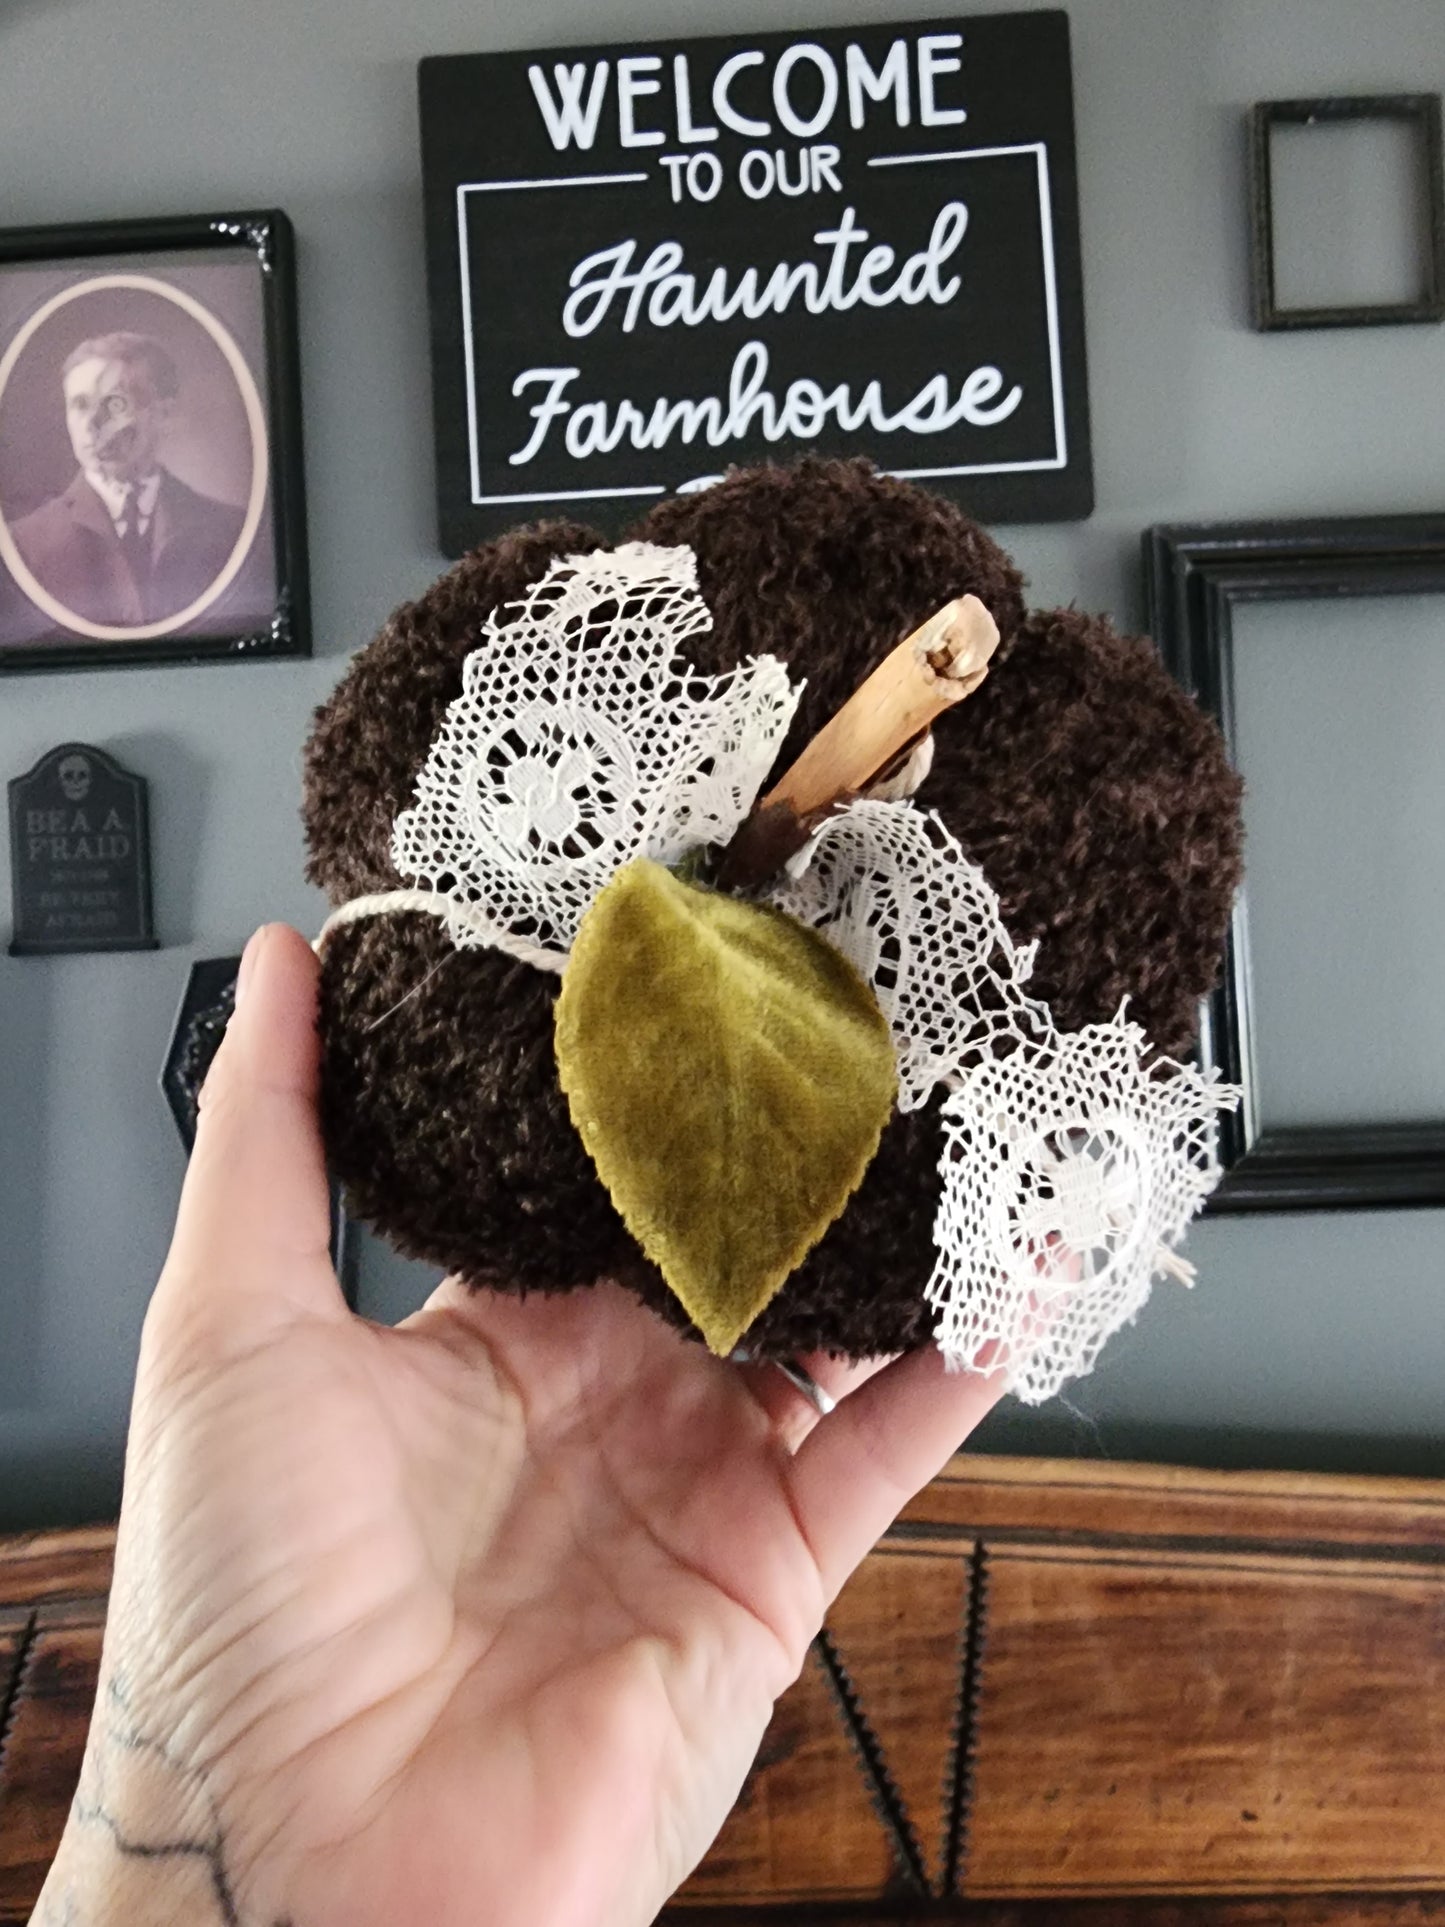 "Cafe Du Foret" Brown Knit Pumpkin Pillow Pouf with Vintage Ribbon and Vintage Velvet Leaf